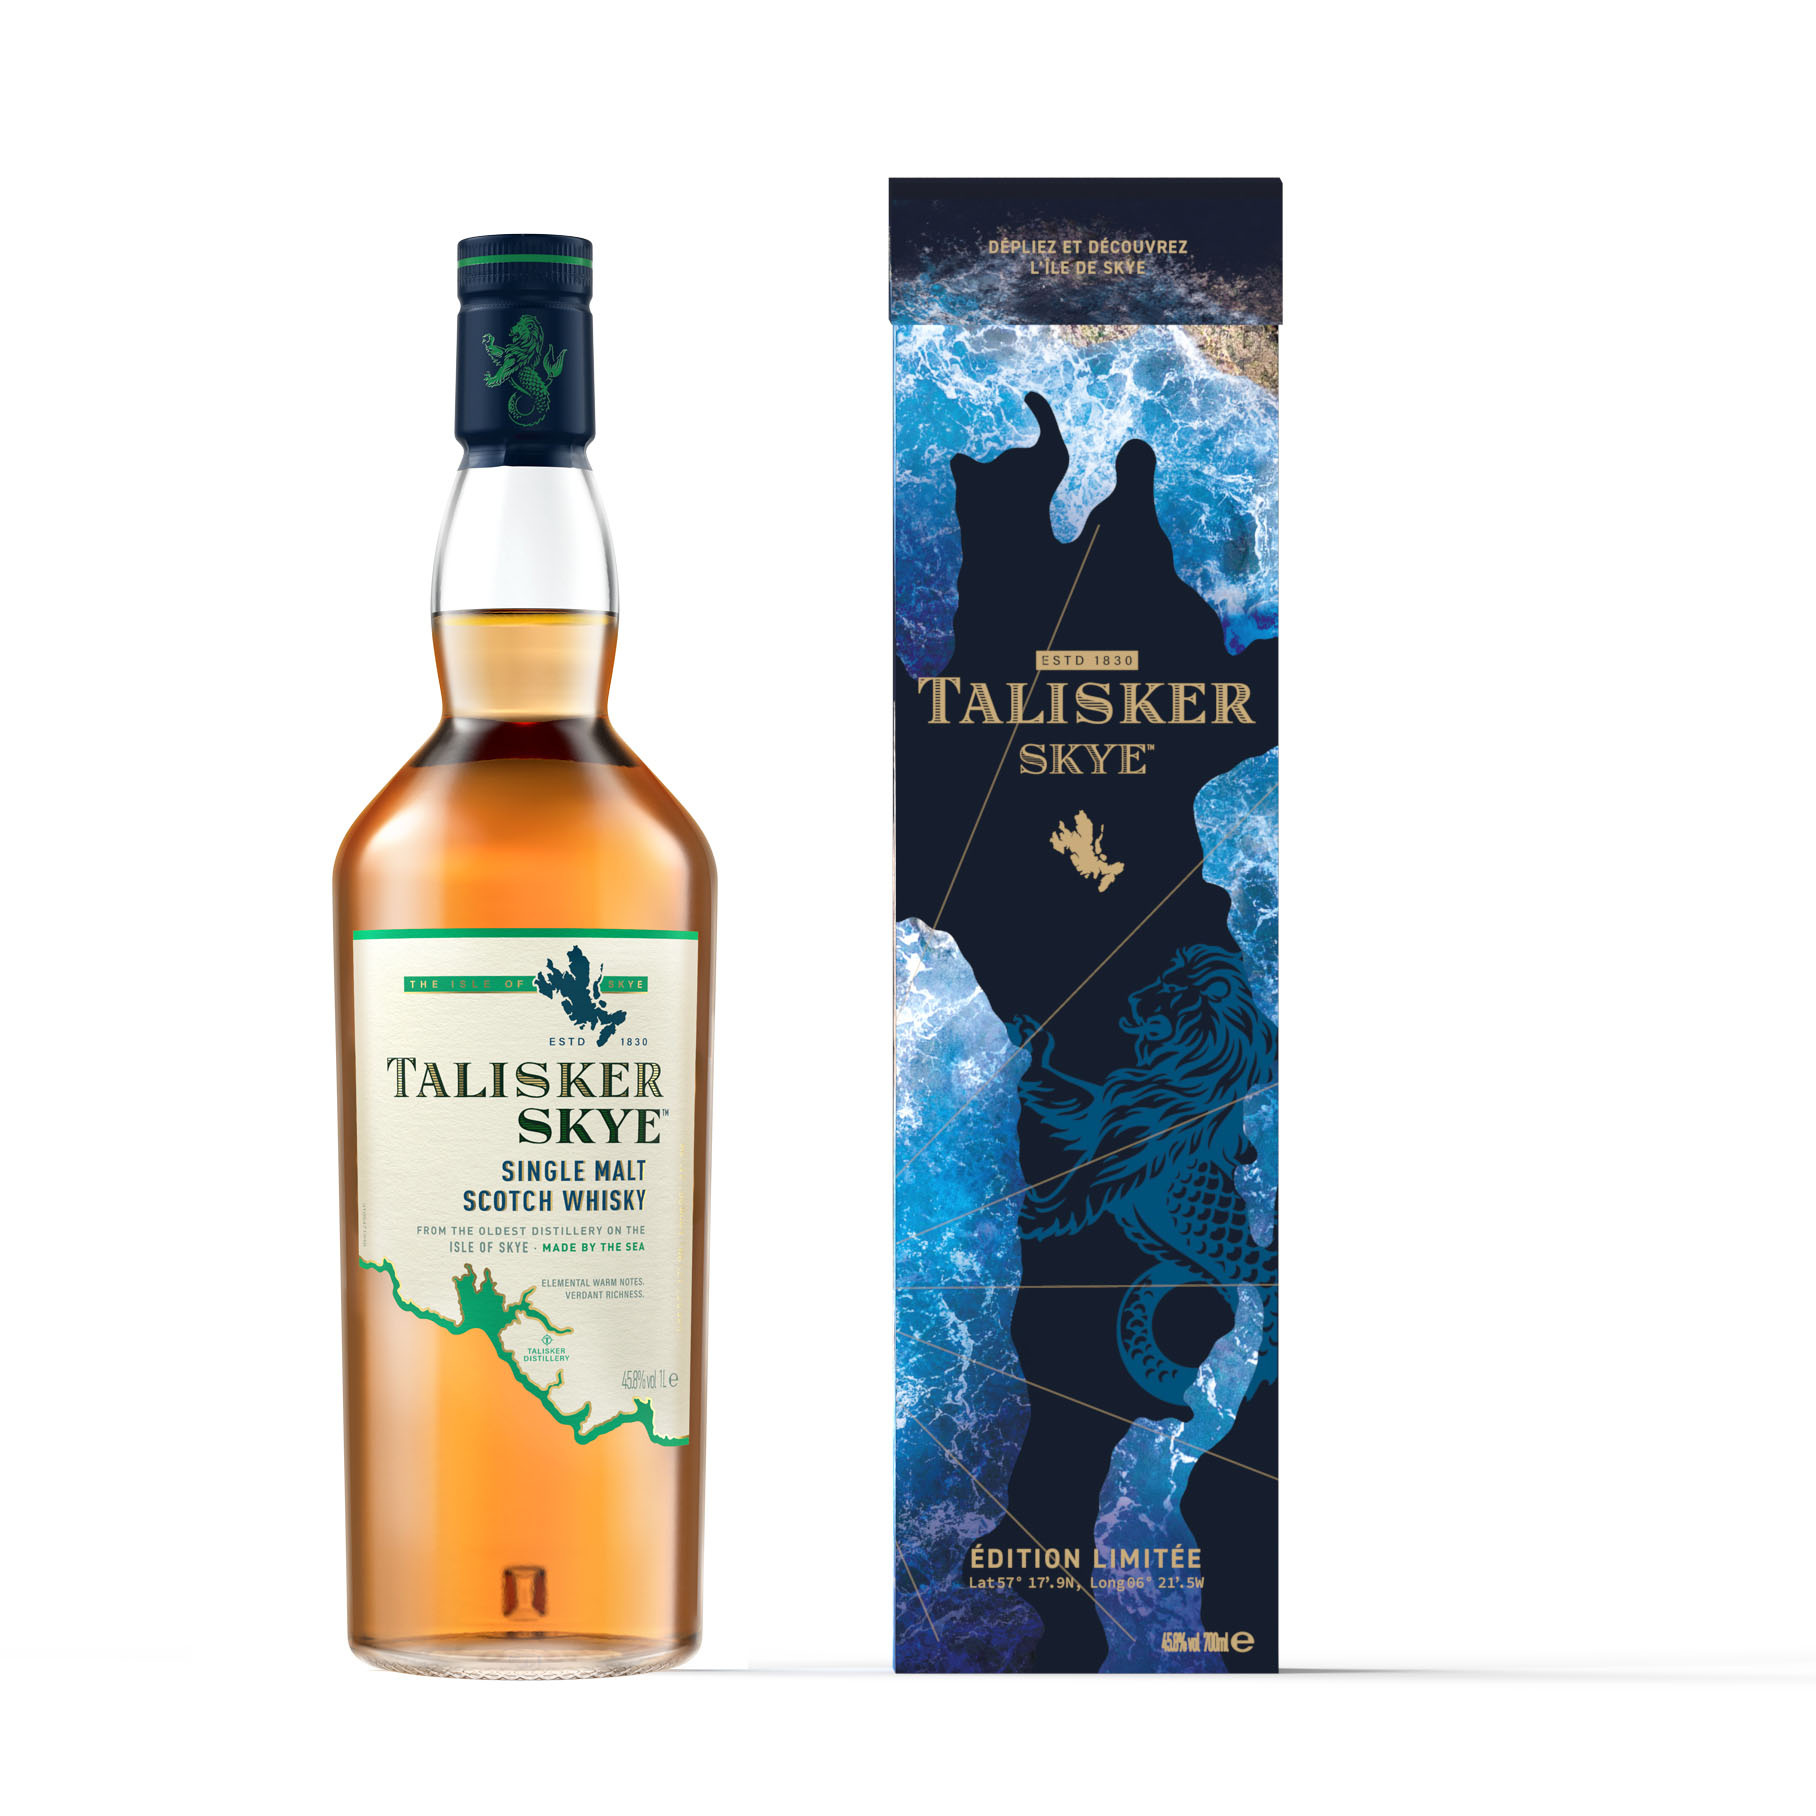 Acheter du Whisky Talisker 10 ans Single Malt 70cl vendu en Coffret 2  verres Saveurs d'Ecosse sur notre site - Odyssee-vins